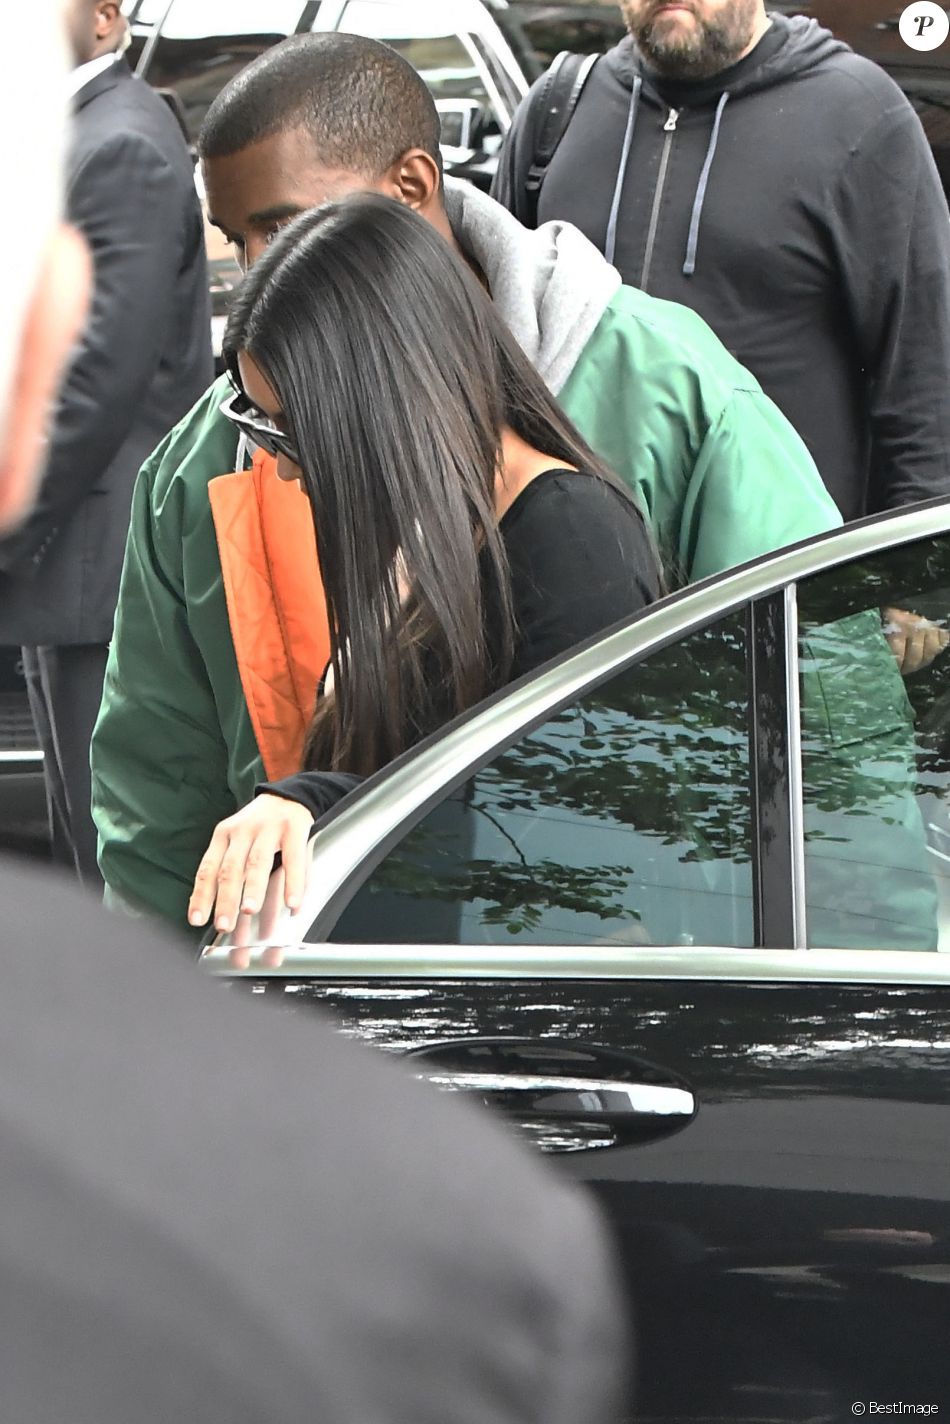 Kim Kardashian et Kanye West arrivent à leur appartement à New York le 3 octobre 2016.